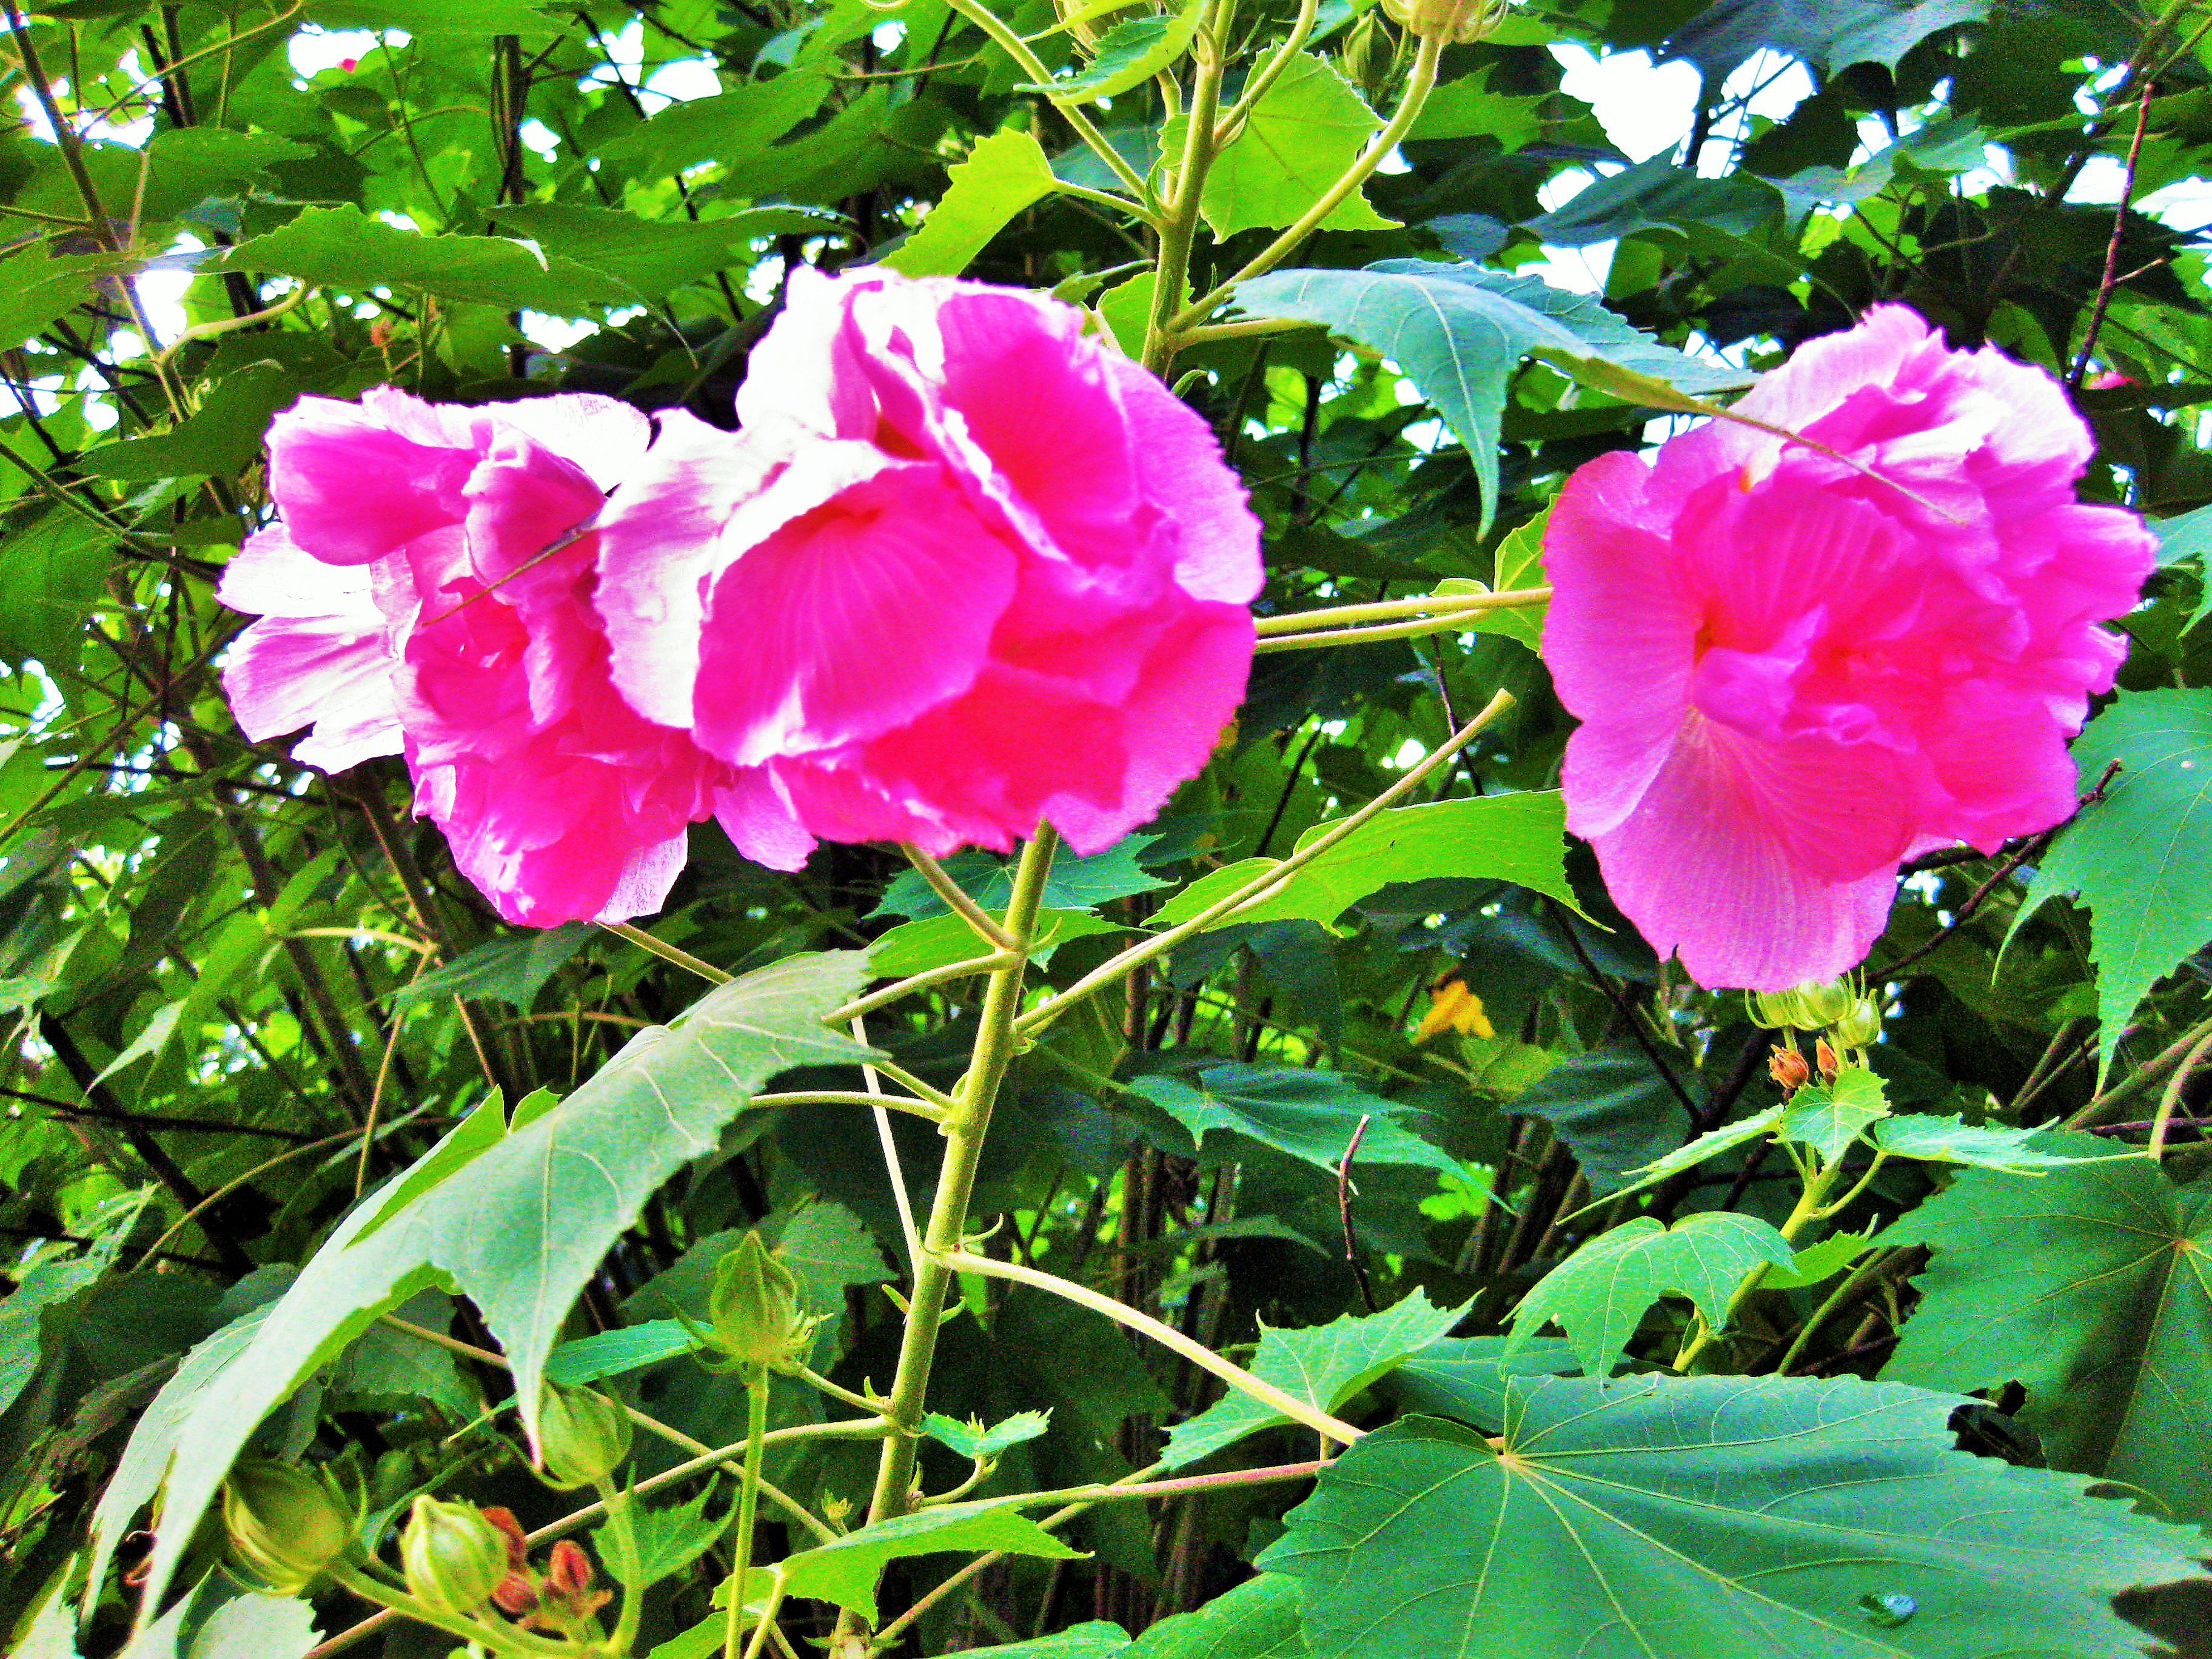 白笹稲荷神社 公式 朝 白かった花が だんだんピンクに染まり 夕方には赤くなる酔芙蓉 すいふよう 話に聞いていたものの実際見ていたら本当に色づいてきて驚きました 自然の摂理と神秘に胸打たれます 花言葉は 繊細な美 しとやかな恋人 枝振りの